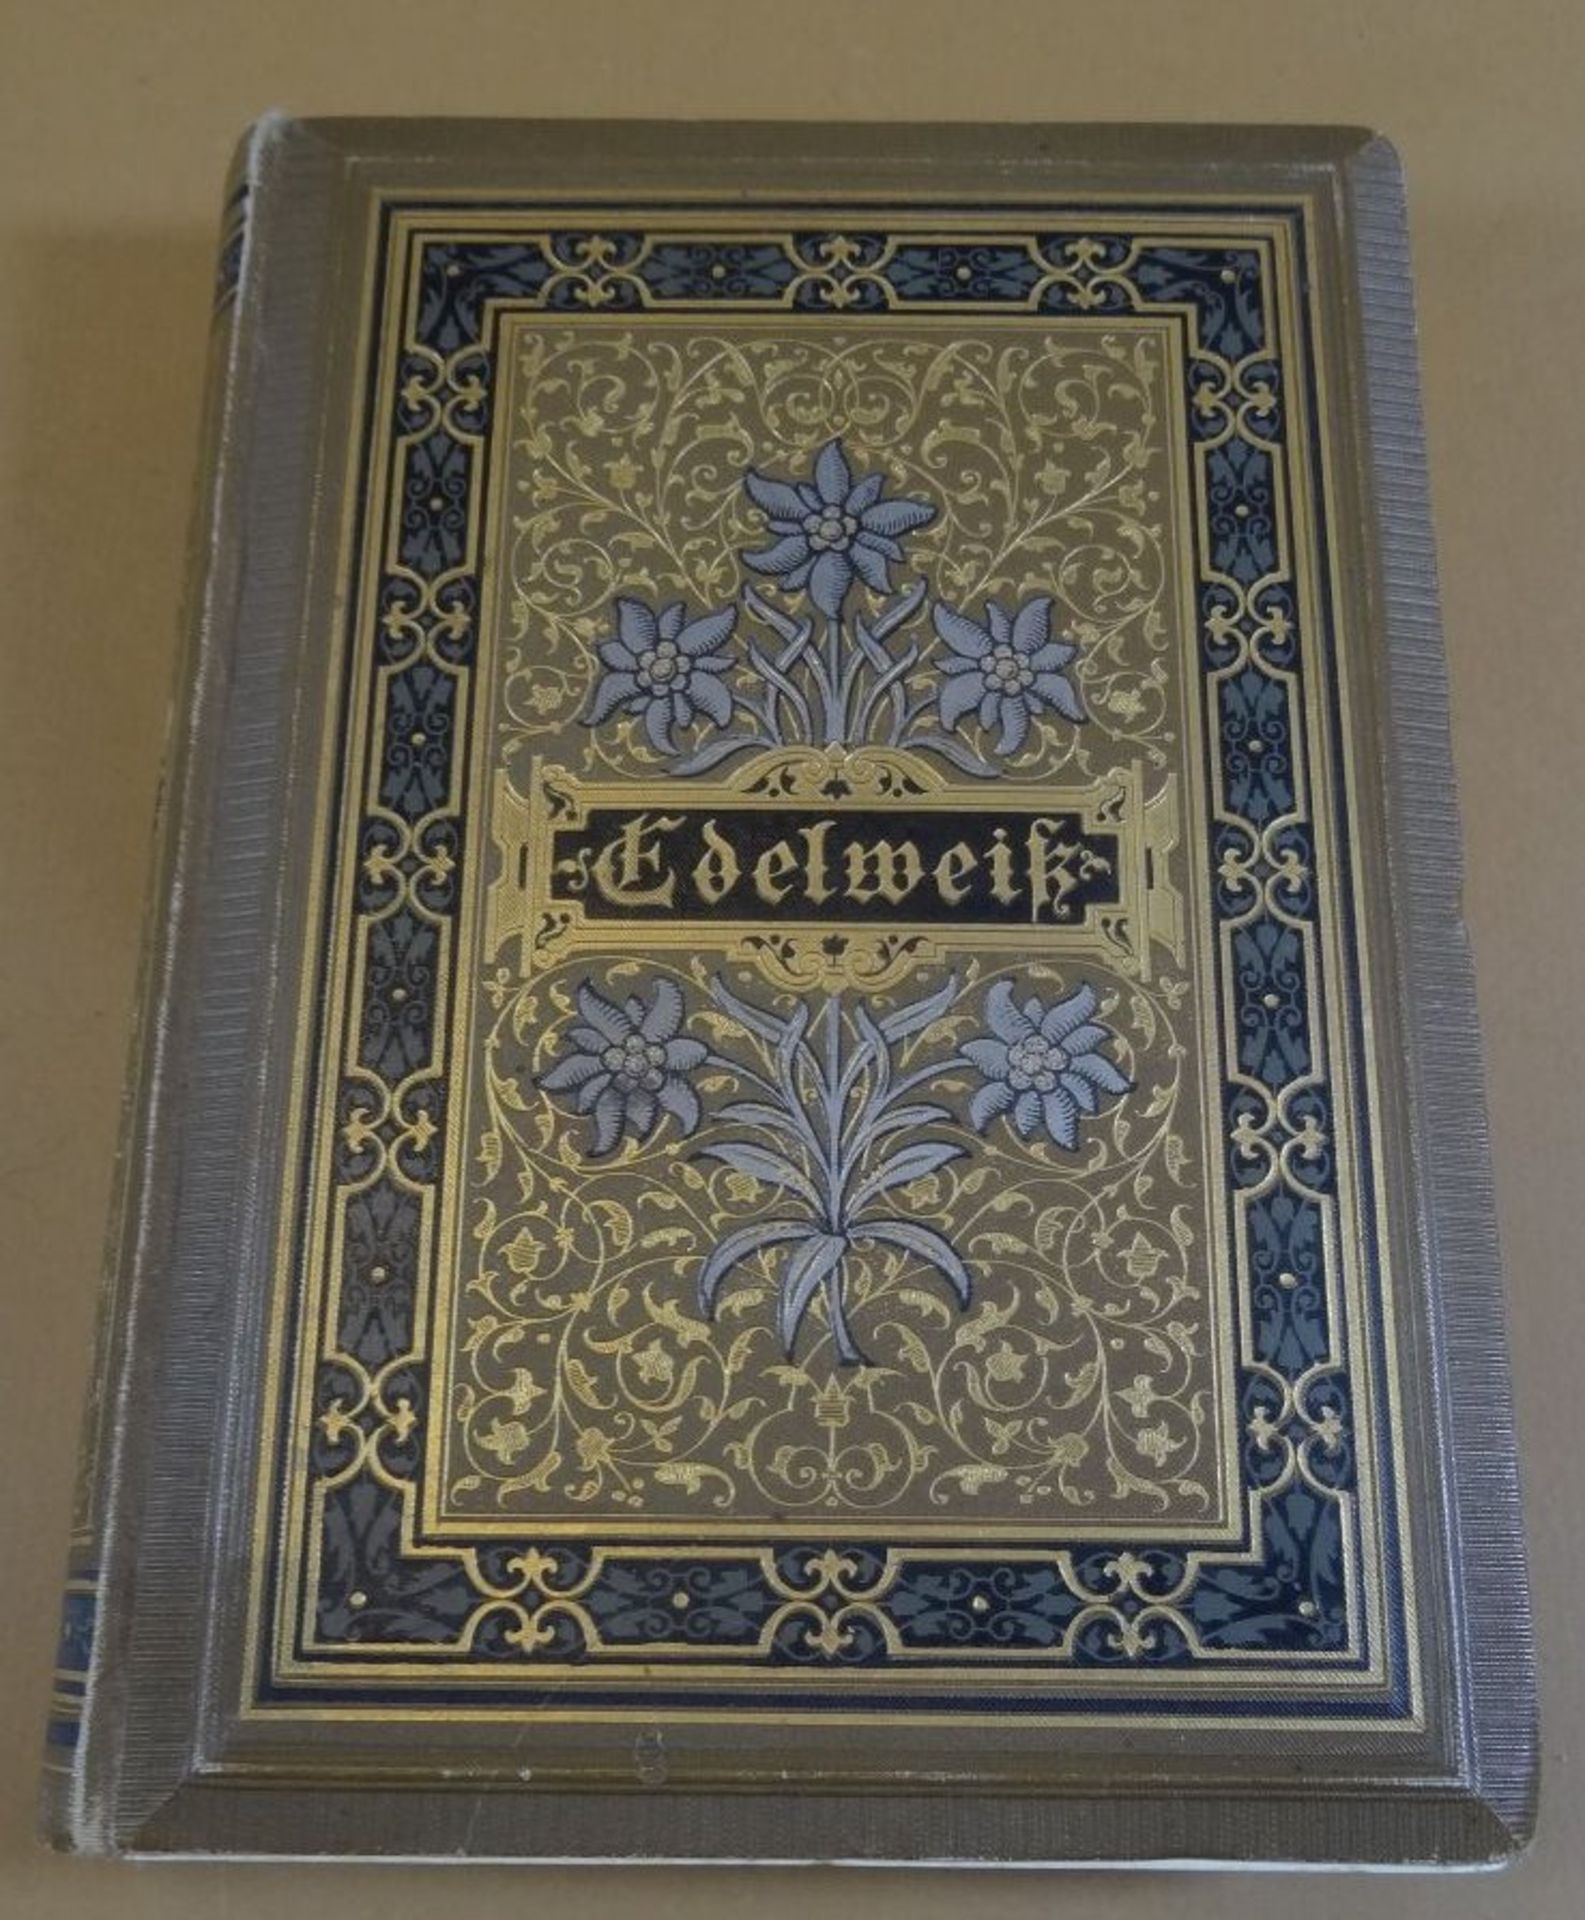 Edelweiss Gedichtband um 1890 "Für Frauensinn und Frauenherz", Prachtband mit Goldschnitt, 18x14 cm